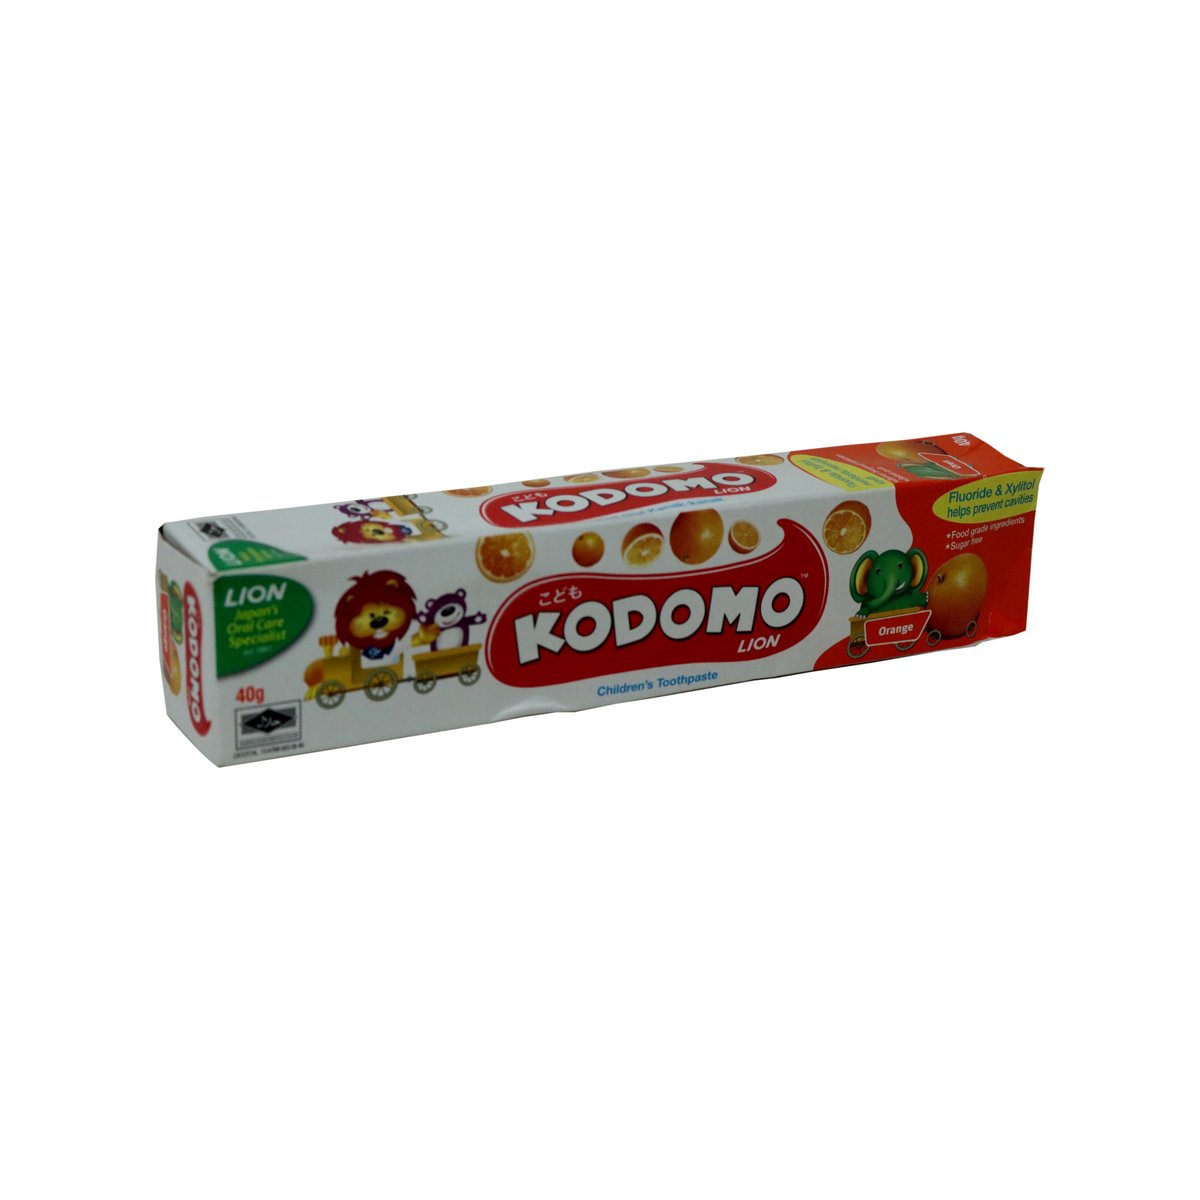 Kodomo Tooth Paste Orange 40g